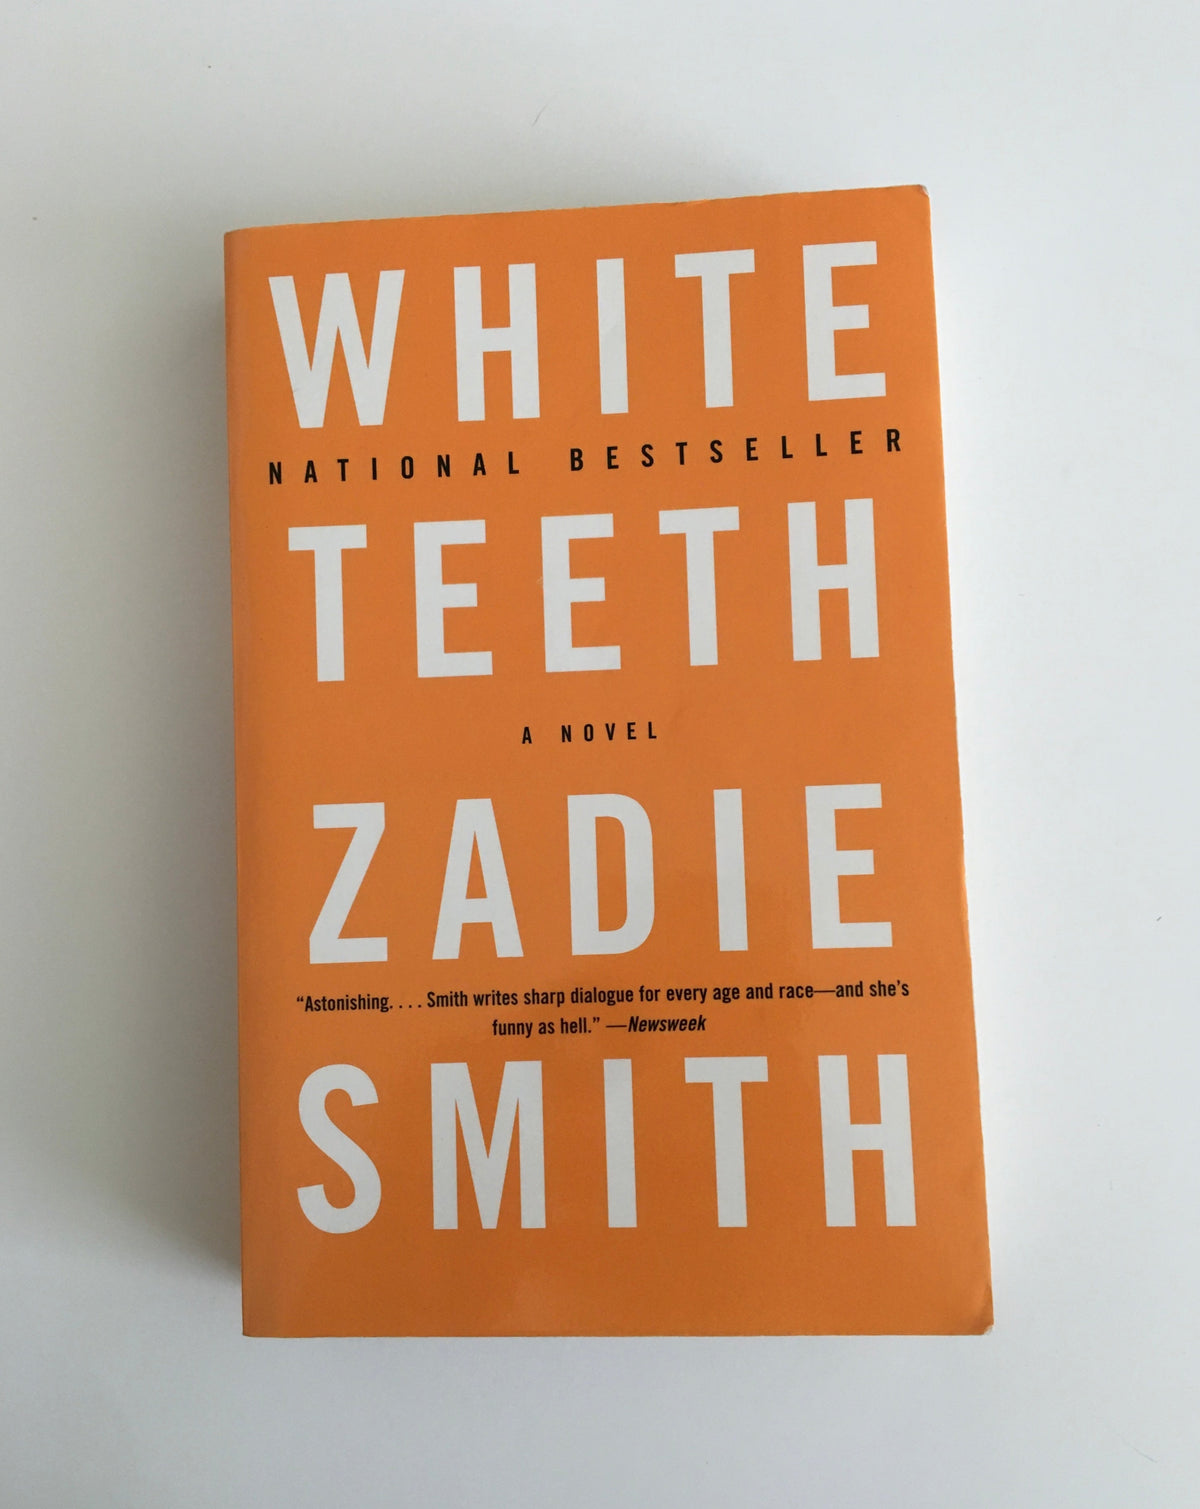 White Teeth by Zadie Smith